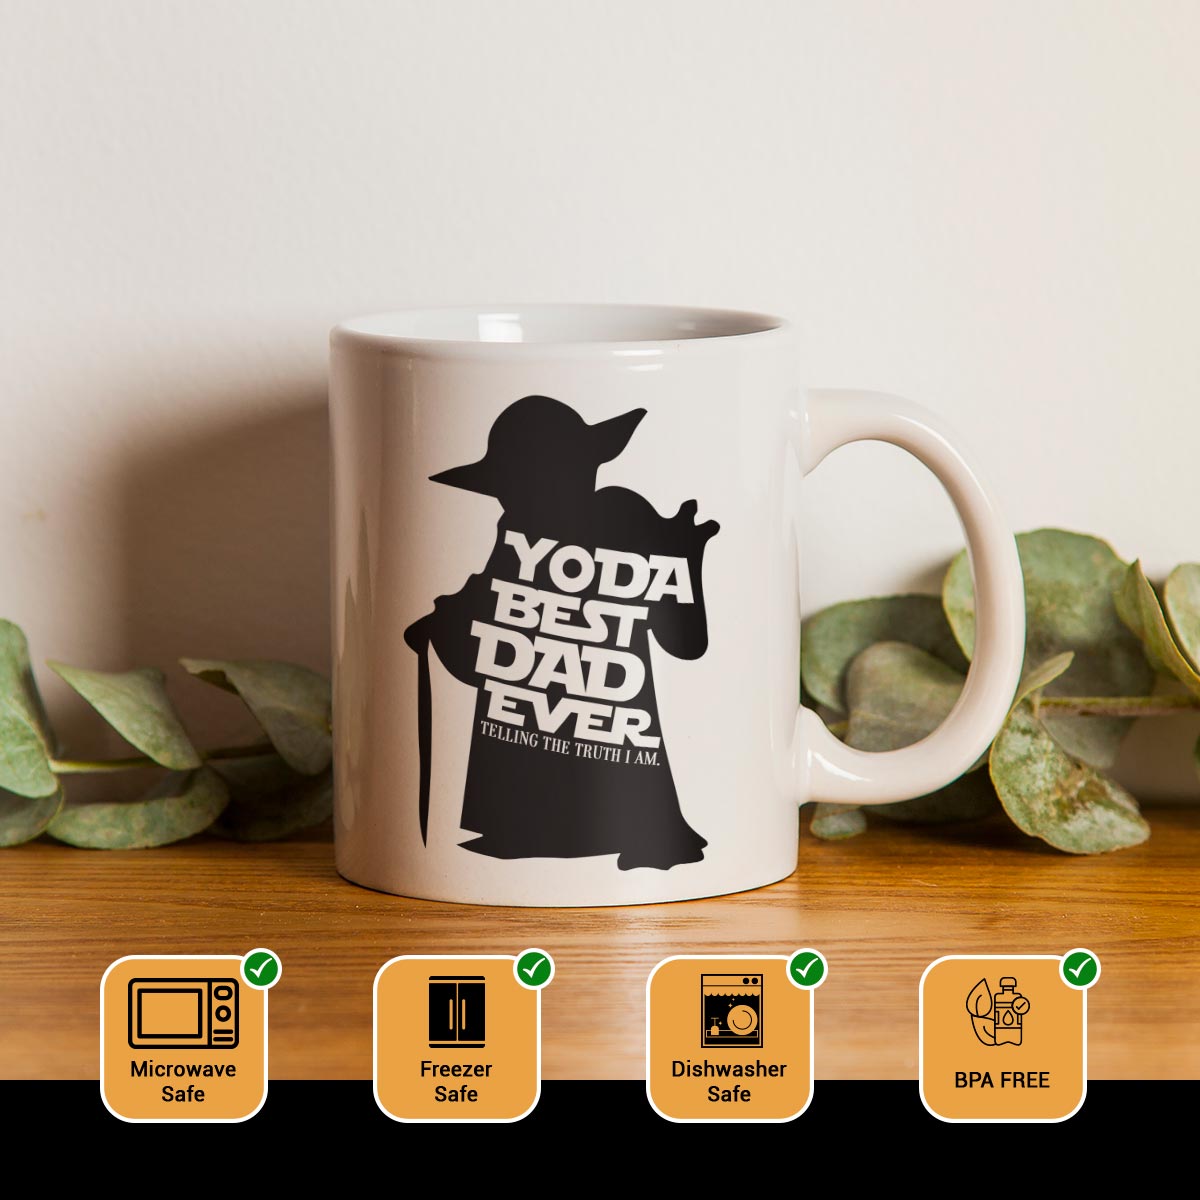 Yoda Best Dad Ever Coffee Mug-2